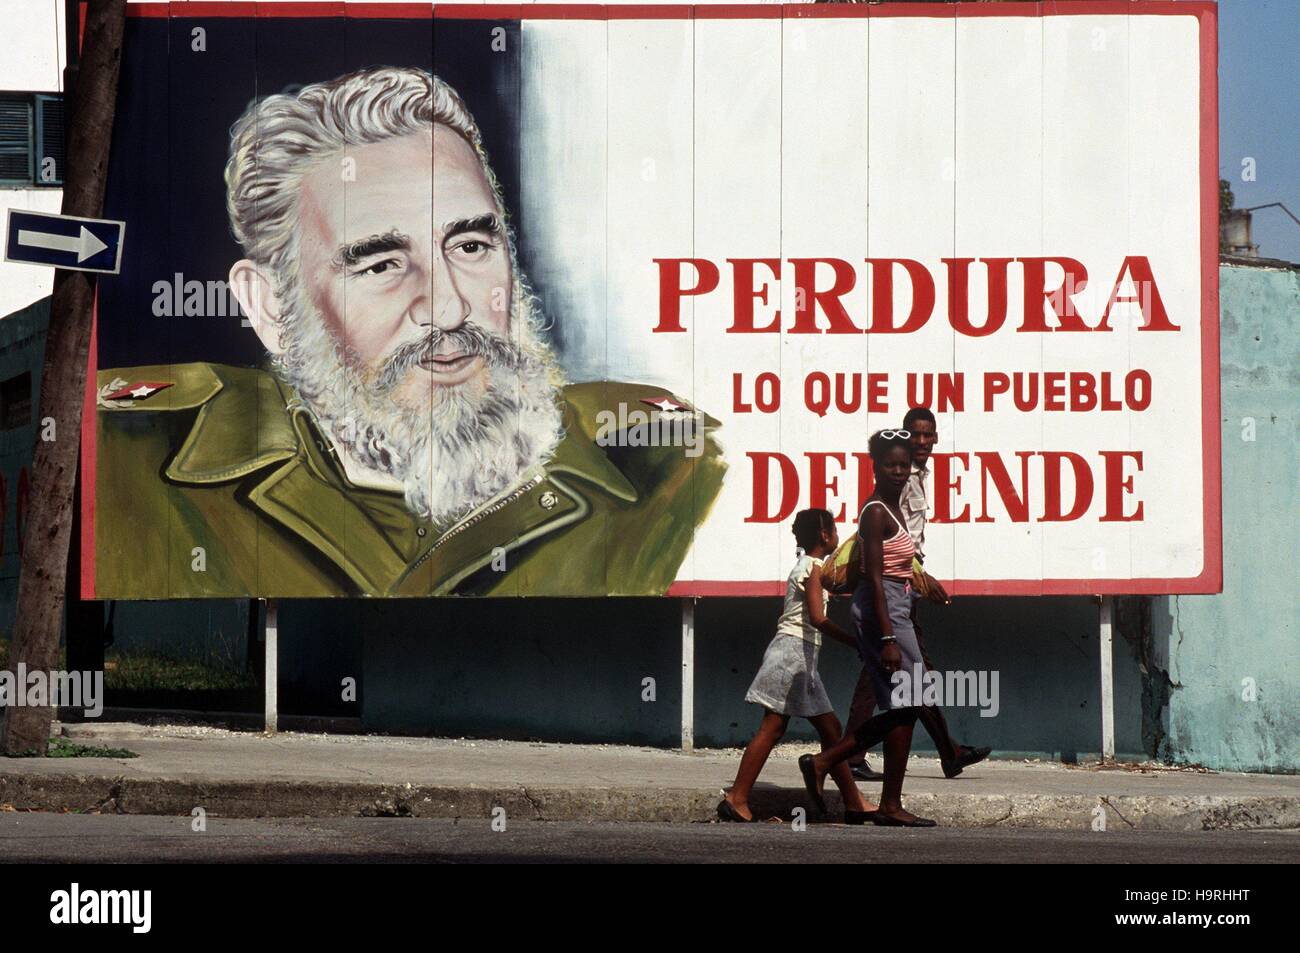 Eine Gruppe Jugendlicher geht an einer Plakatwand mit einem überdimensionalen Bildnis des Staats- und Parteichefs Fidel Castro vorbei, aufgenommen Ende 1996 in Kubas Hauptstadt Havanna. | Verwendung weltweit/picture alliance Stock Photo